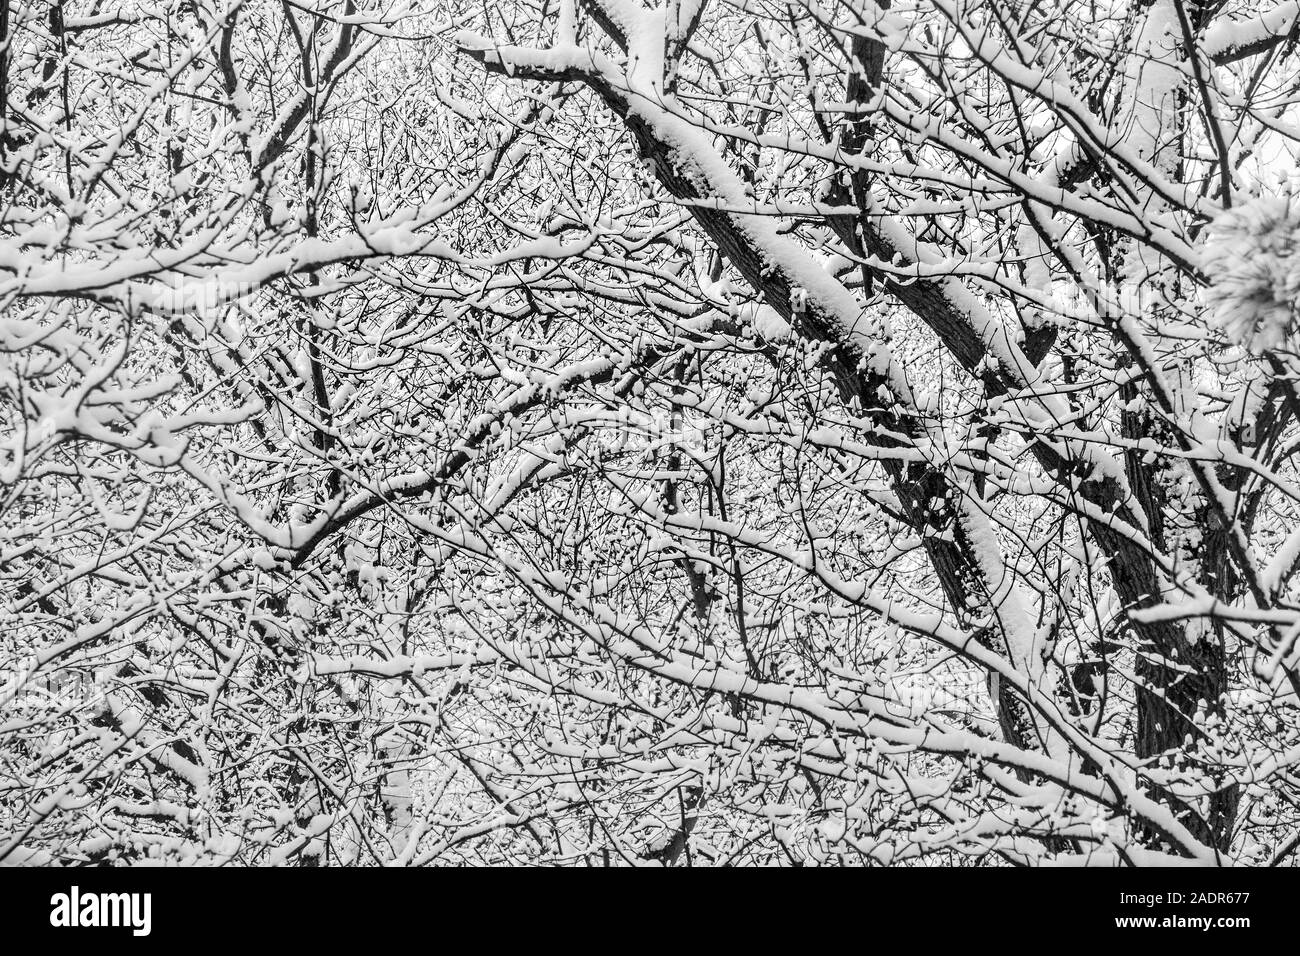 Les arbres recouverts de neige après une tempête de la fin de l'hiver Banque D'Images